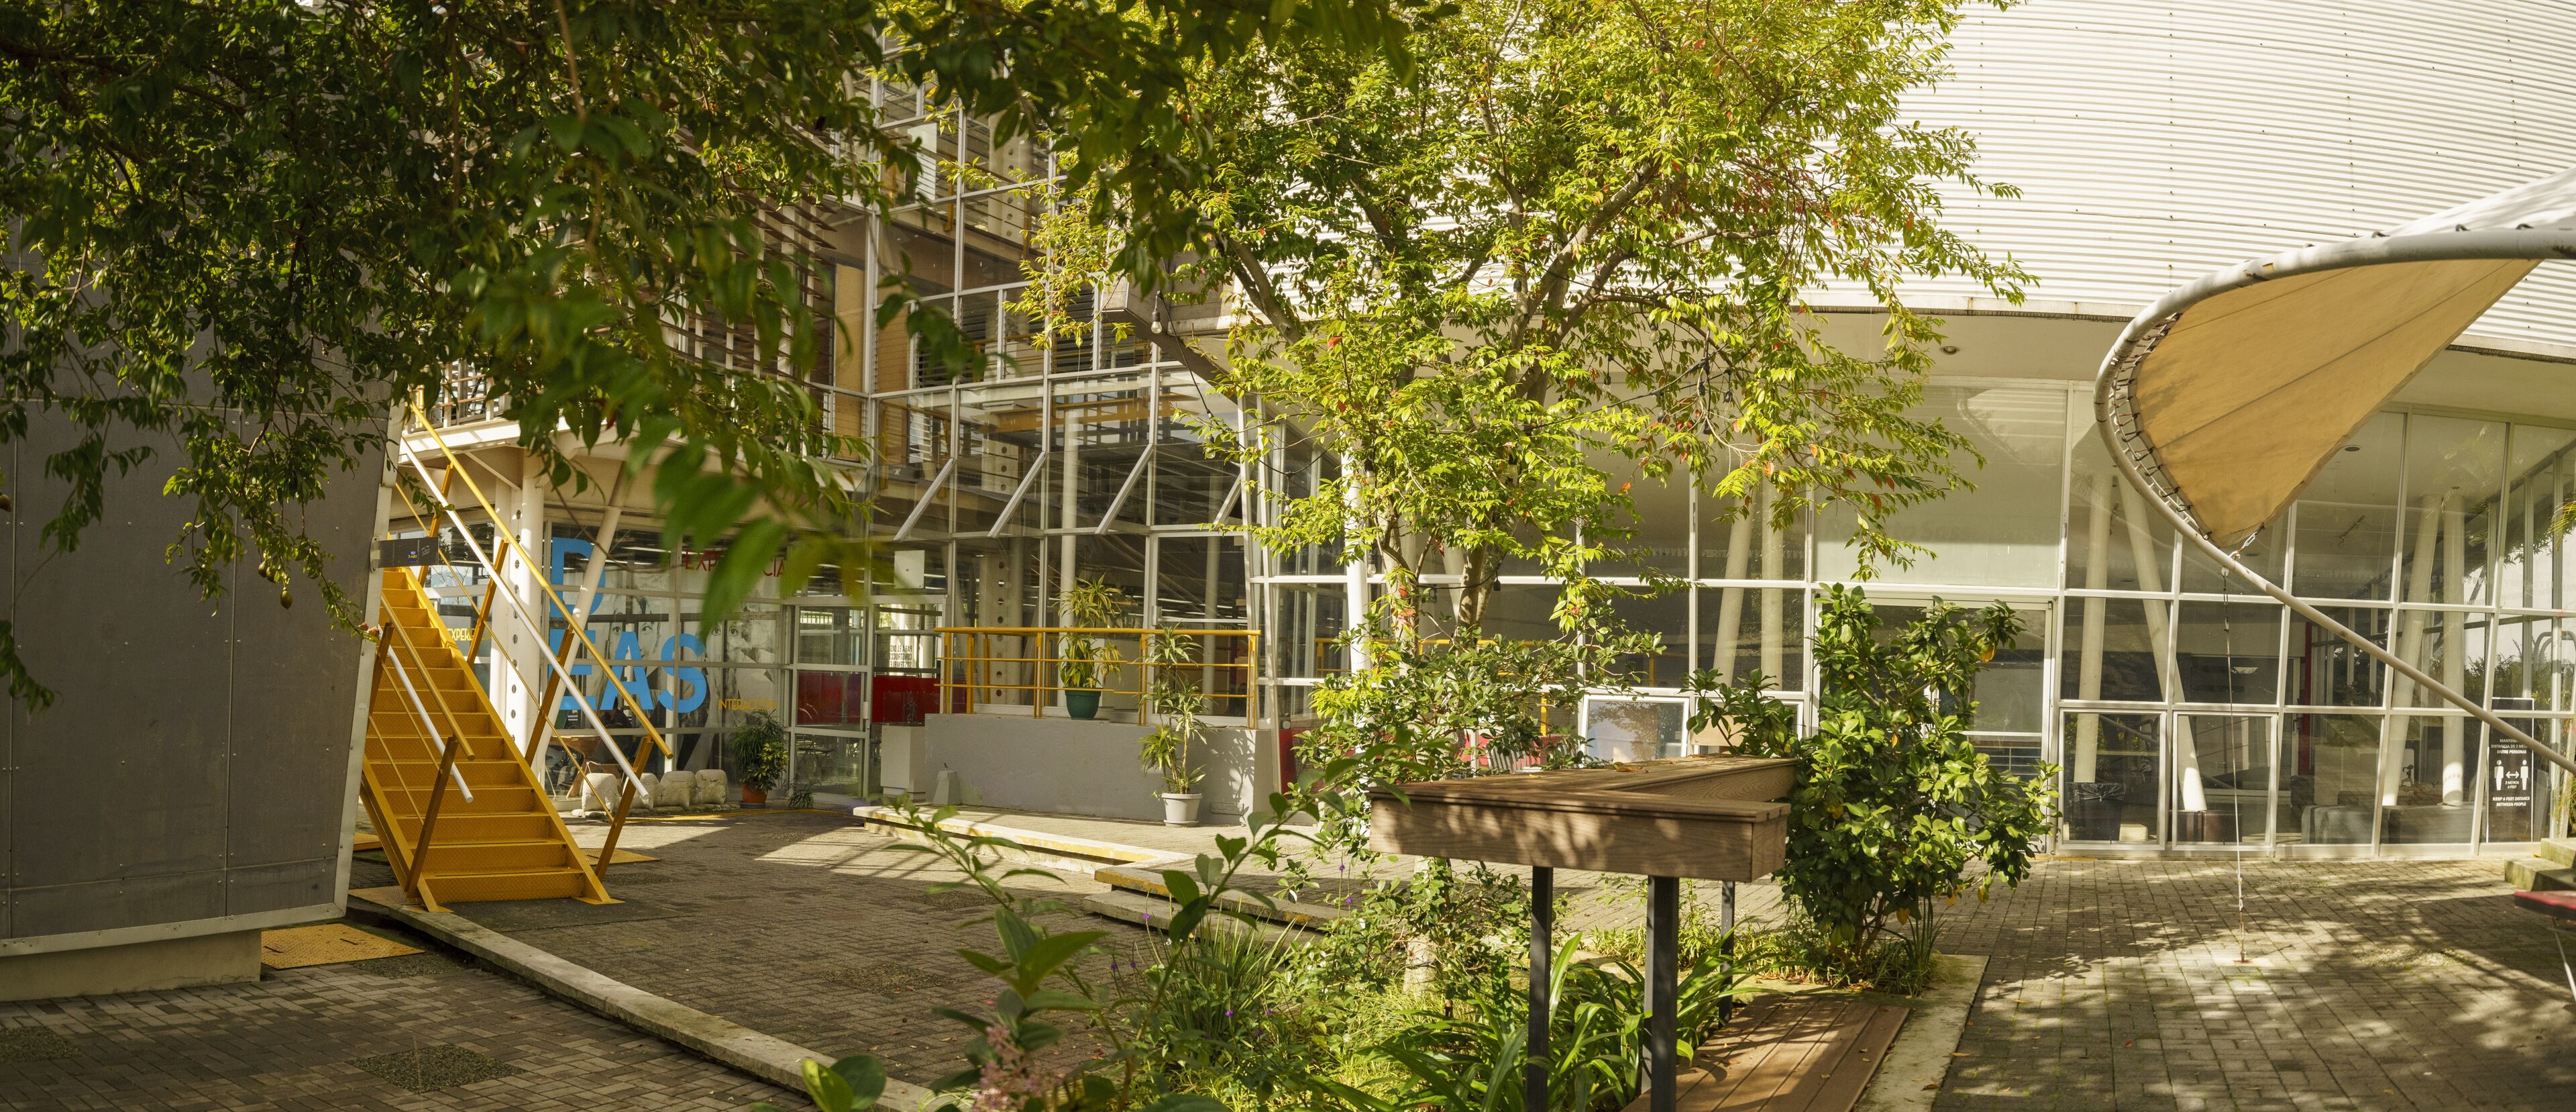 Un patio vibrante en un campus universitario, con una variedad de vegetación en medio de la arquitectura moderna. La zona está rodeada de edificios con paredes de vidrio, escaleras de metal y una escalera amarilla, reflejando la mezcla de naturaleza y modernidad. Los árboles y plantas añaden un toque refrescante, ofreciendo un ambiente sereno y ecológico.